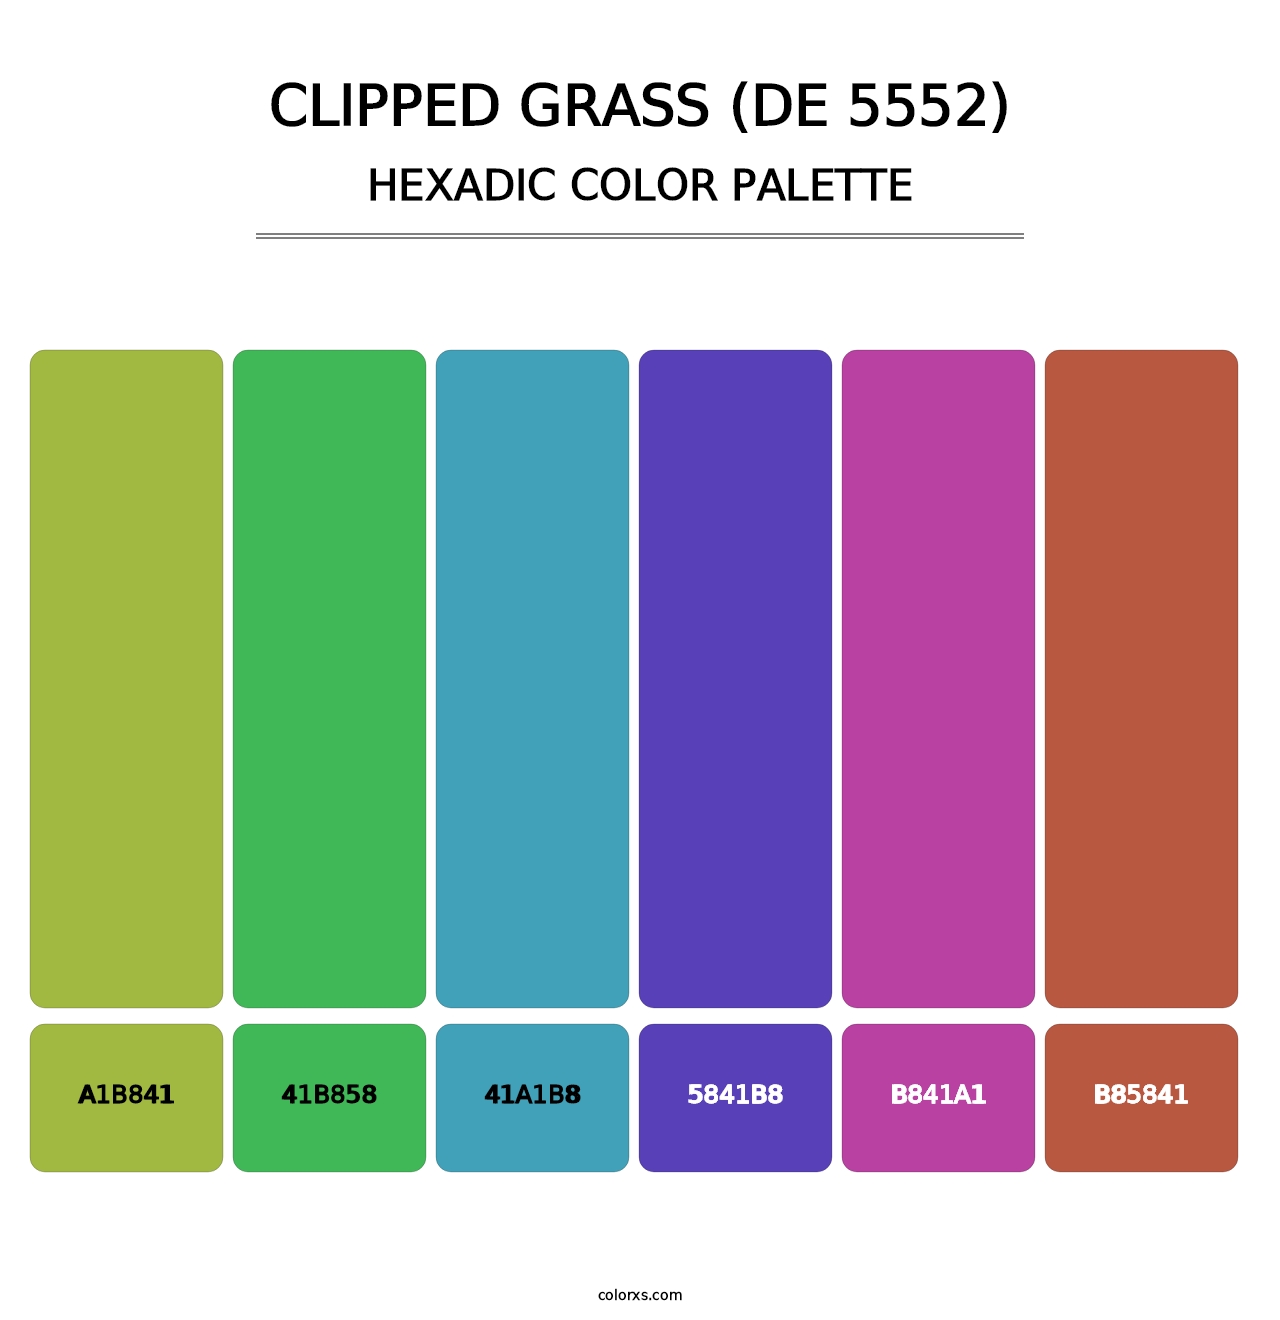 Clipped Grass (DE 5552) - Hexadic Color Palette